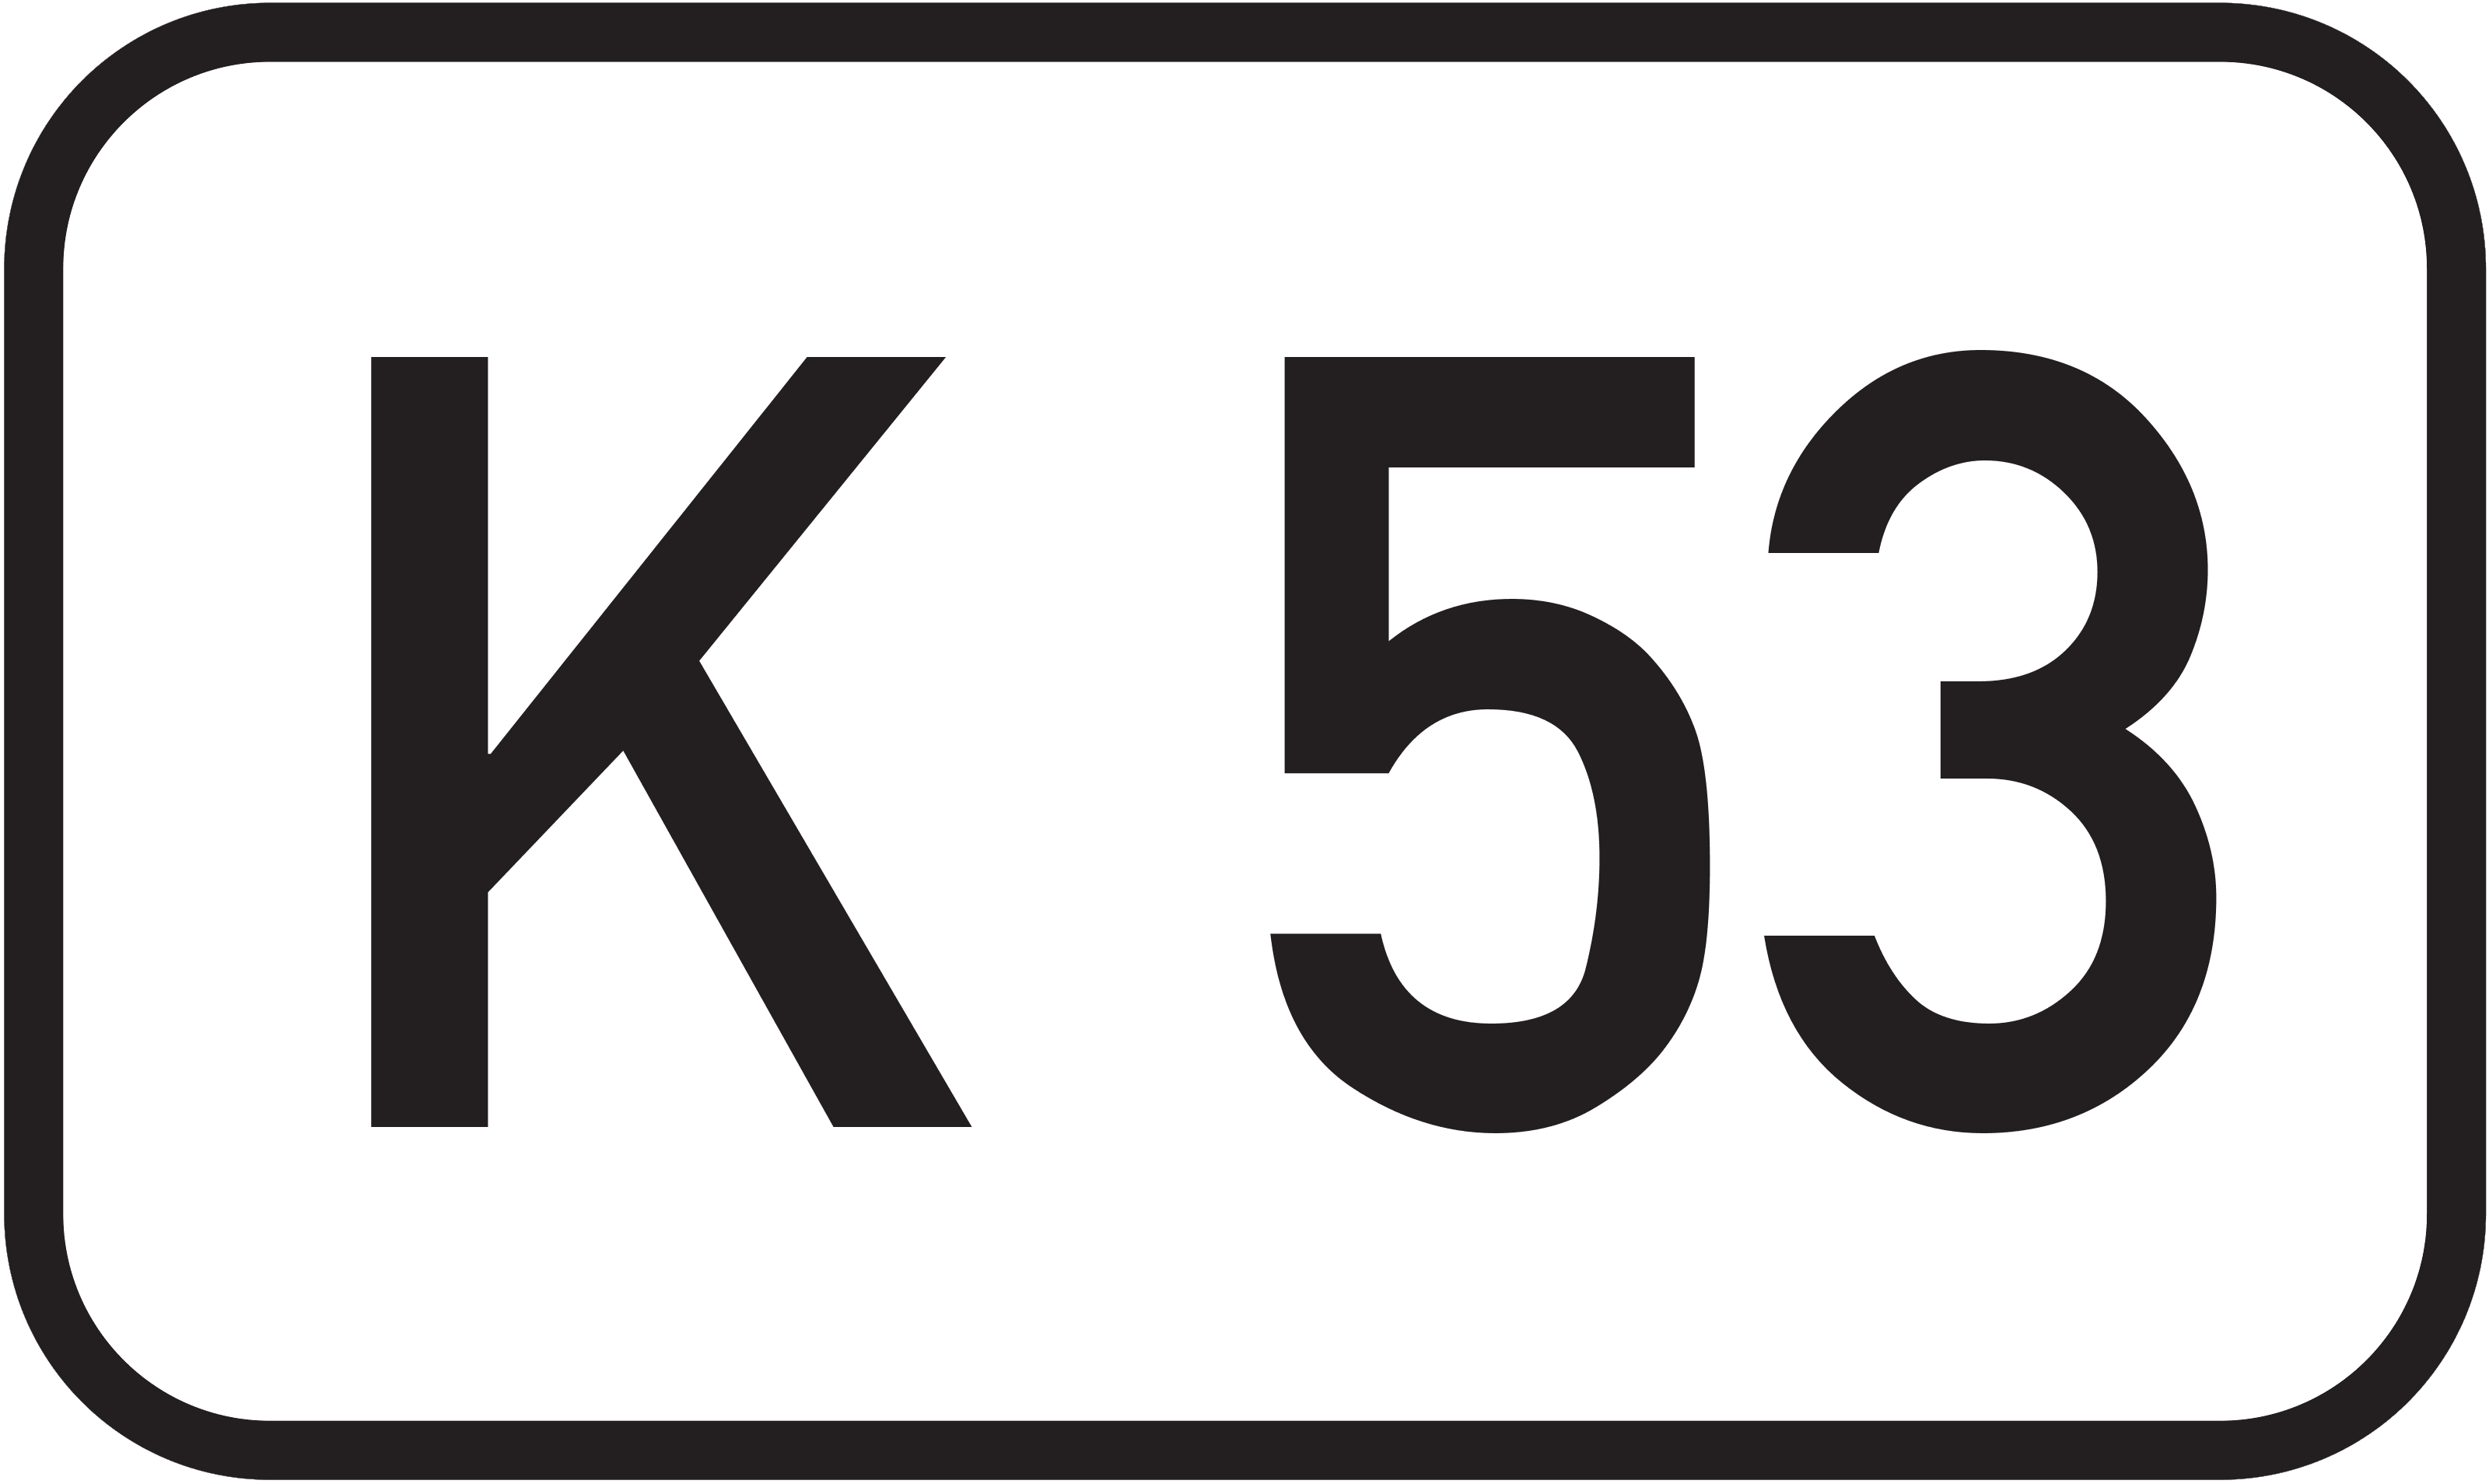 Kreisstraße K 53